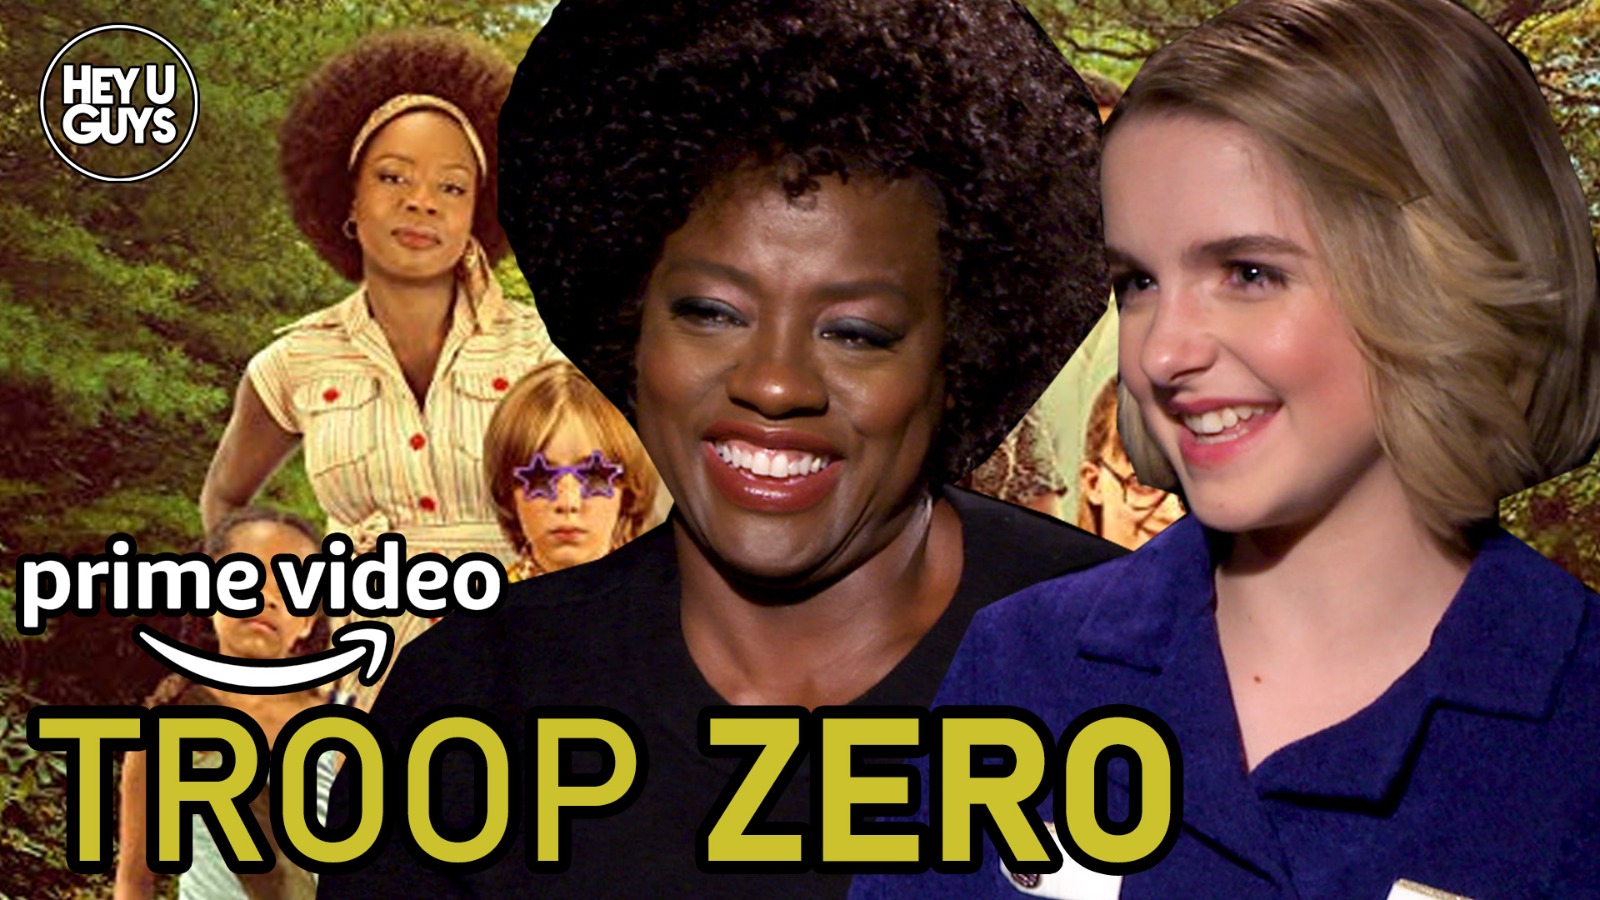 Exclusive: Allison Janney, Viola Davis & McKenna Grace on Troop Zero - HeyUGuys1600 x 900